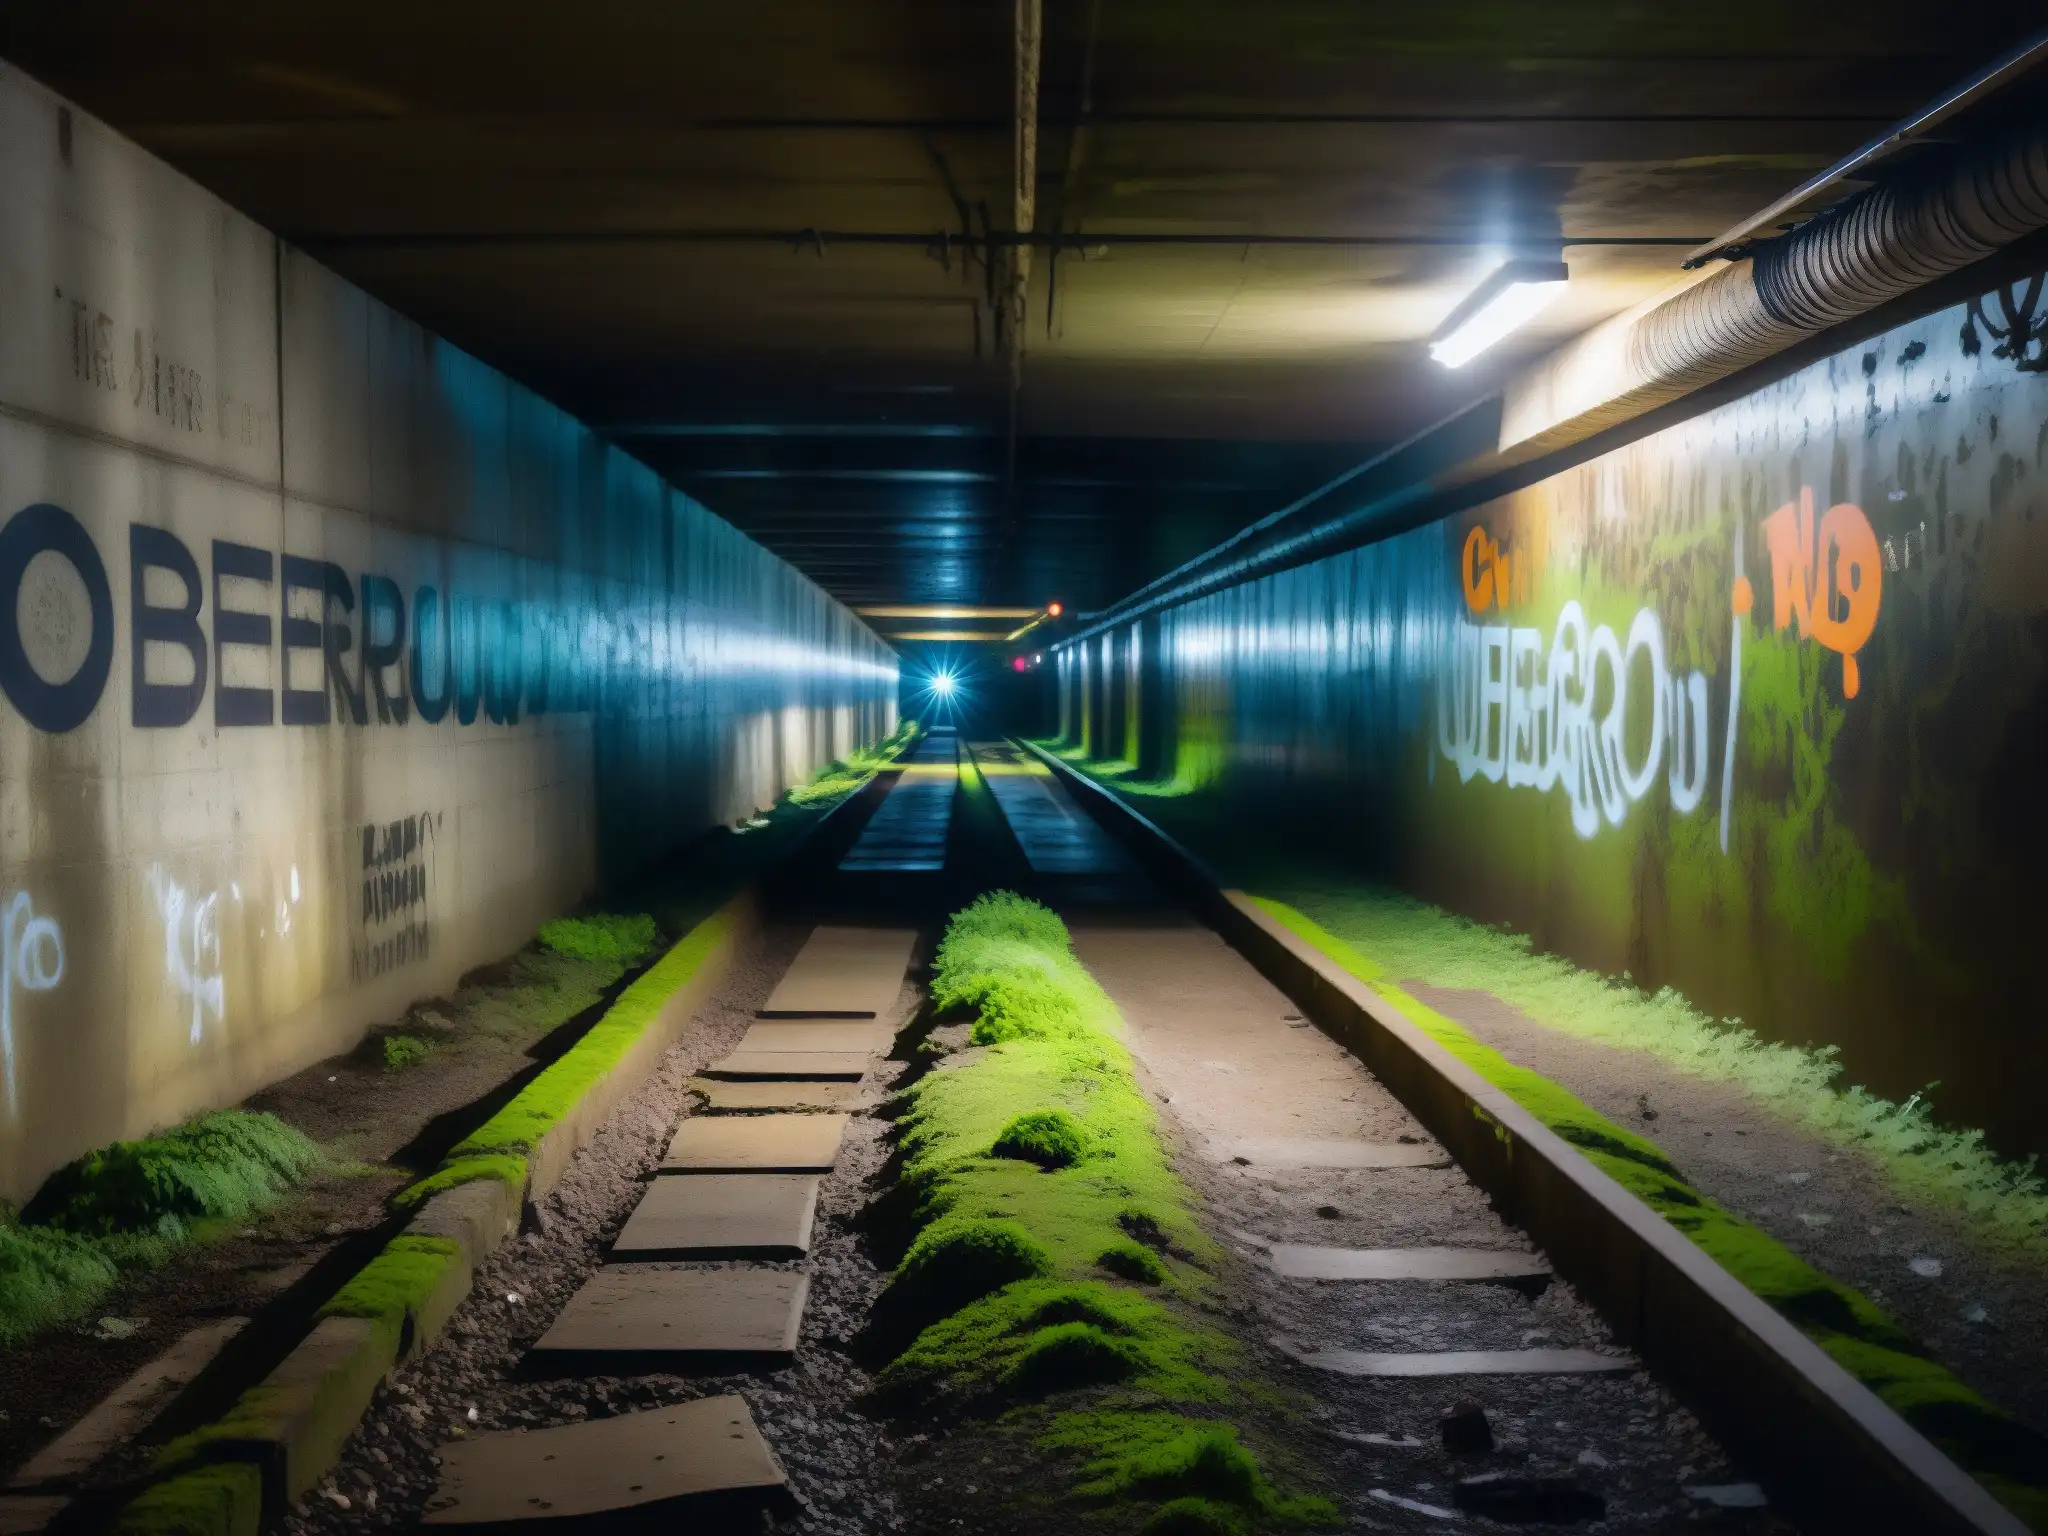 Un túnel subterráneo en penumbra con grafitis y moho, revela la atmósfera inquietante y el misterio de la base subterránea de Denver mito